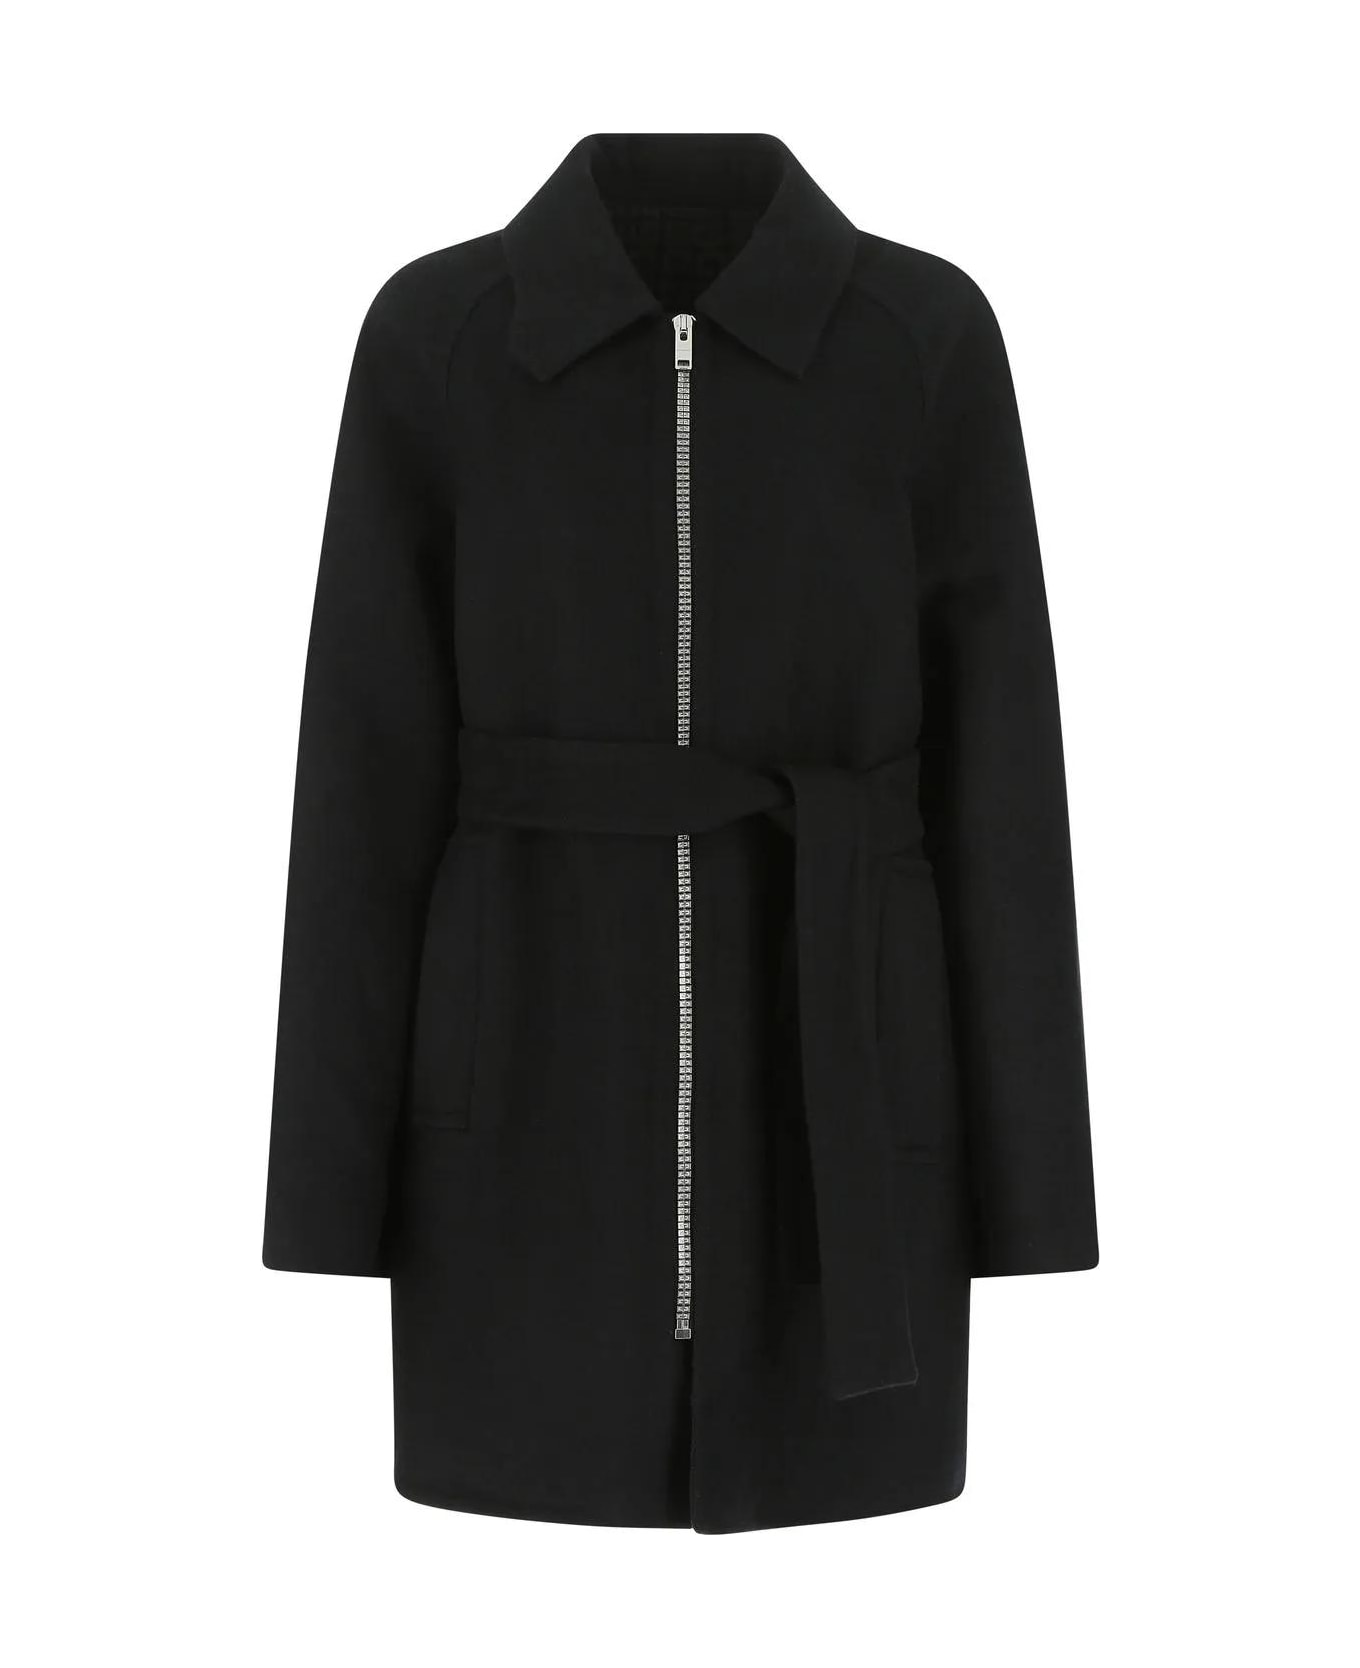 Givenchy Black Wool Blend Coat - Black